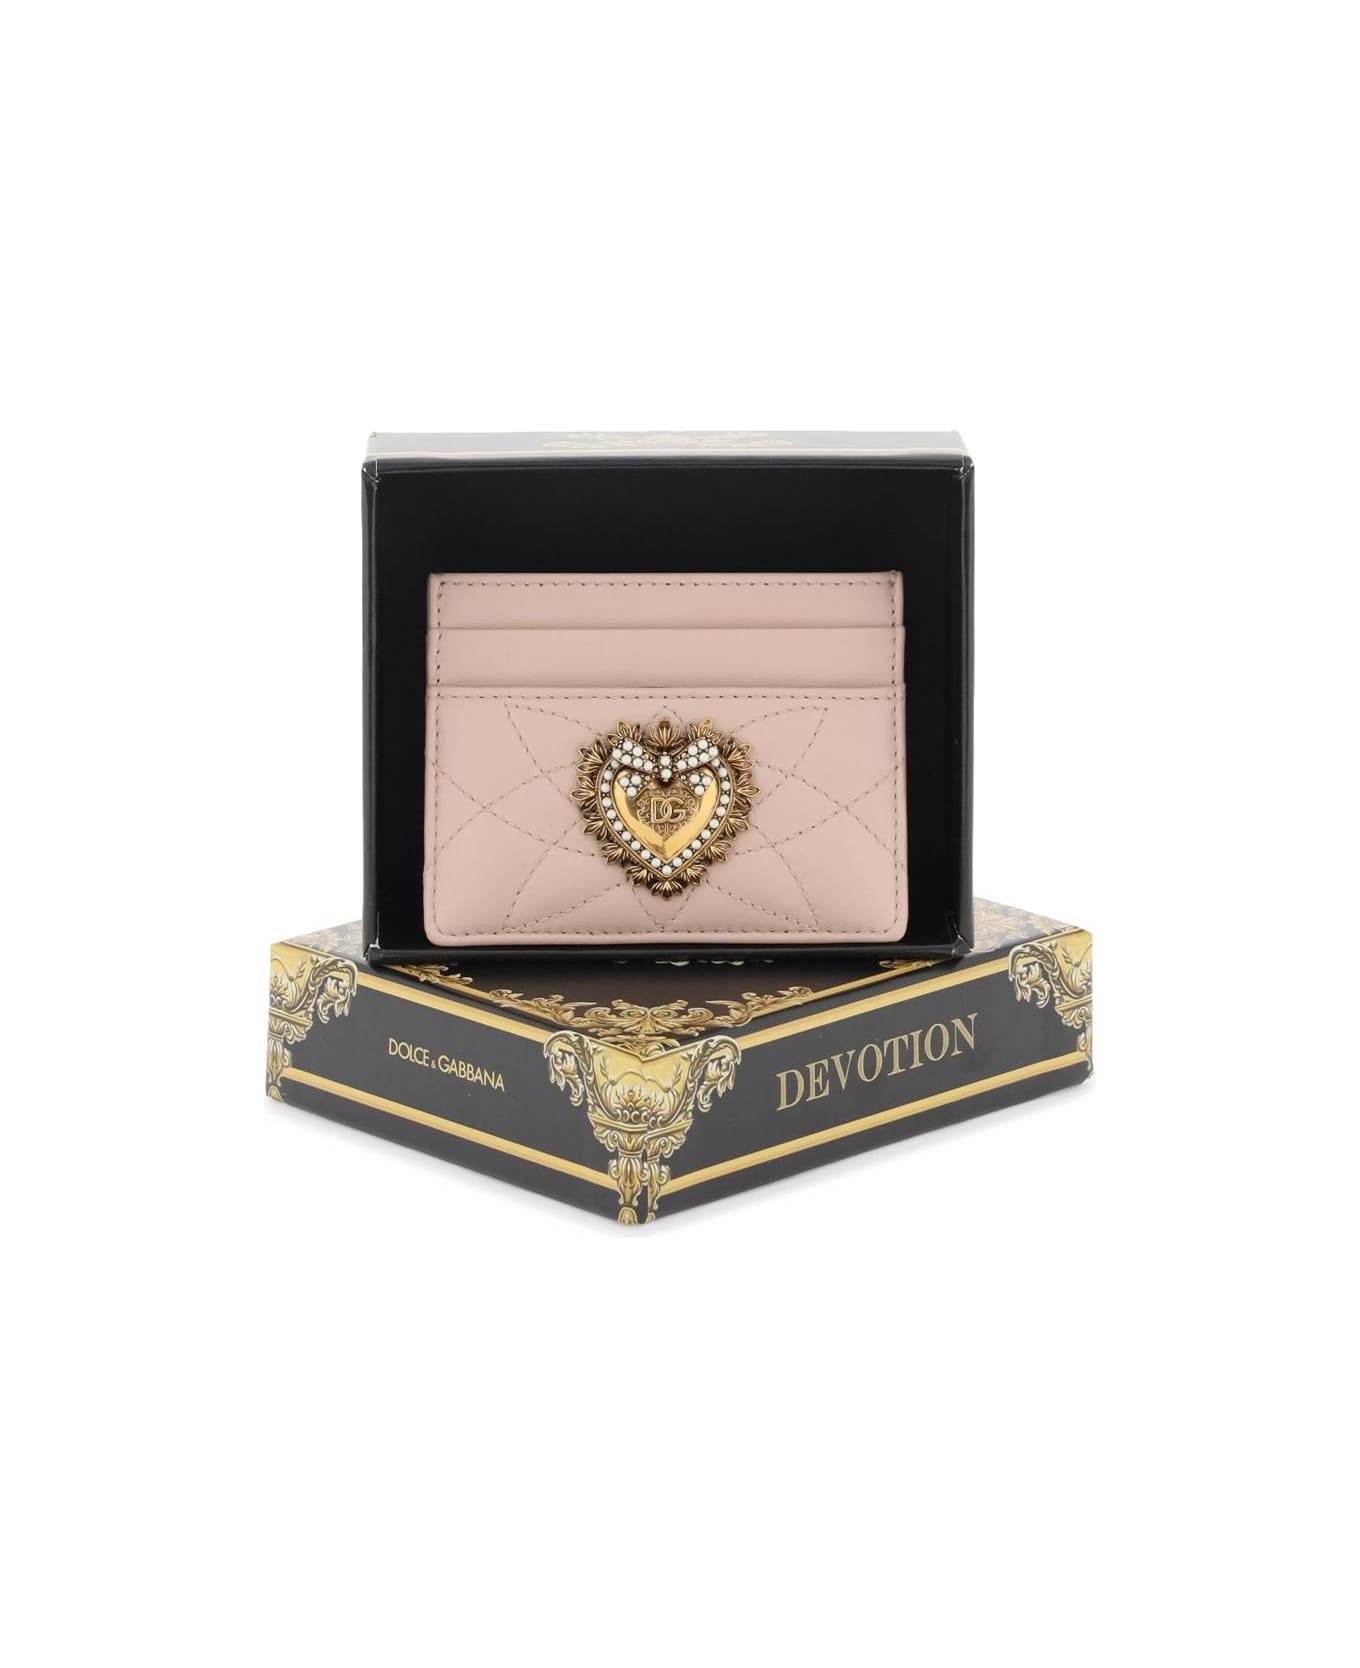 Dolce & Gabbana 'devotion' Cardholder - CIPRIA 1 (Pink)